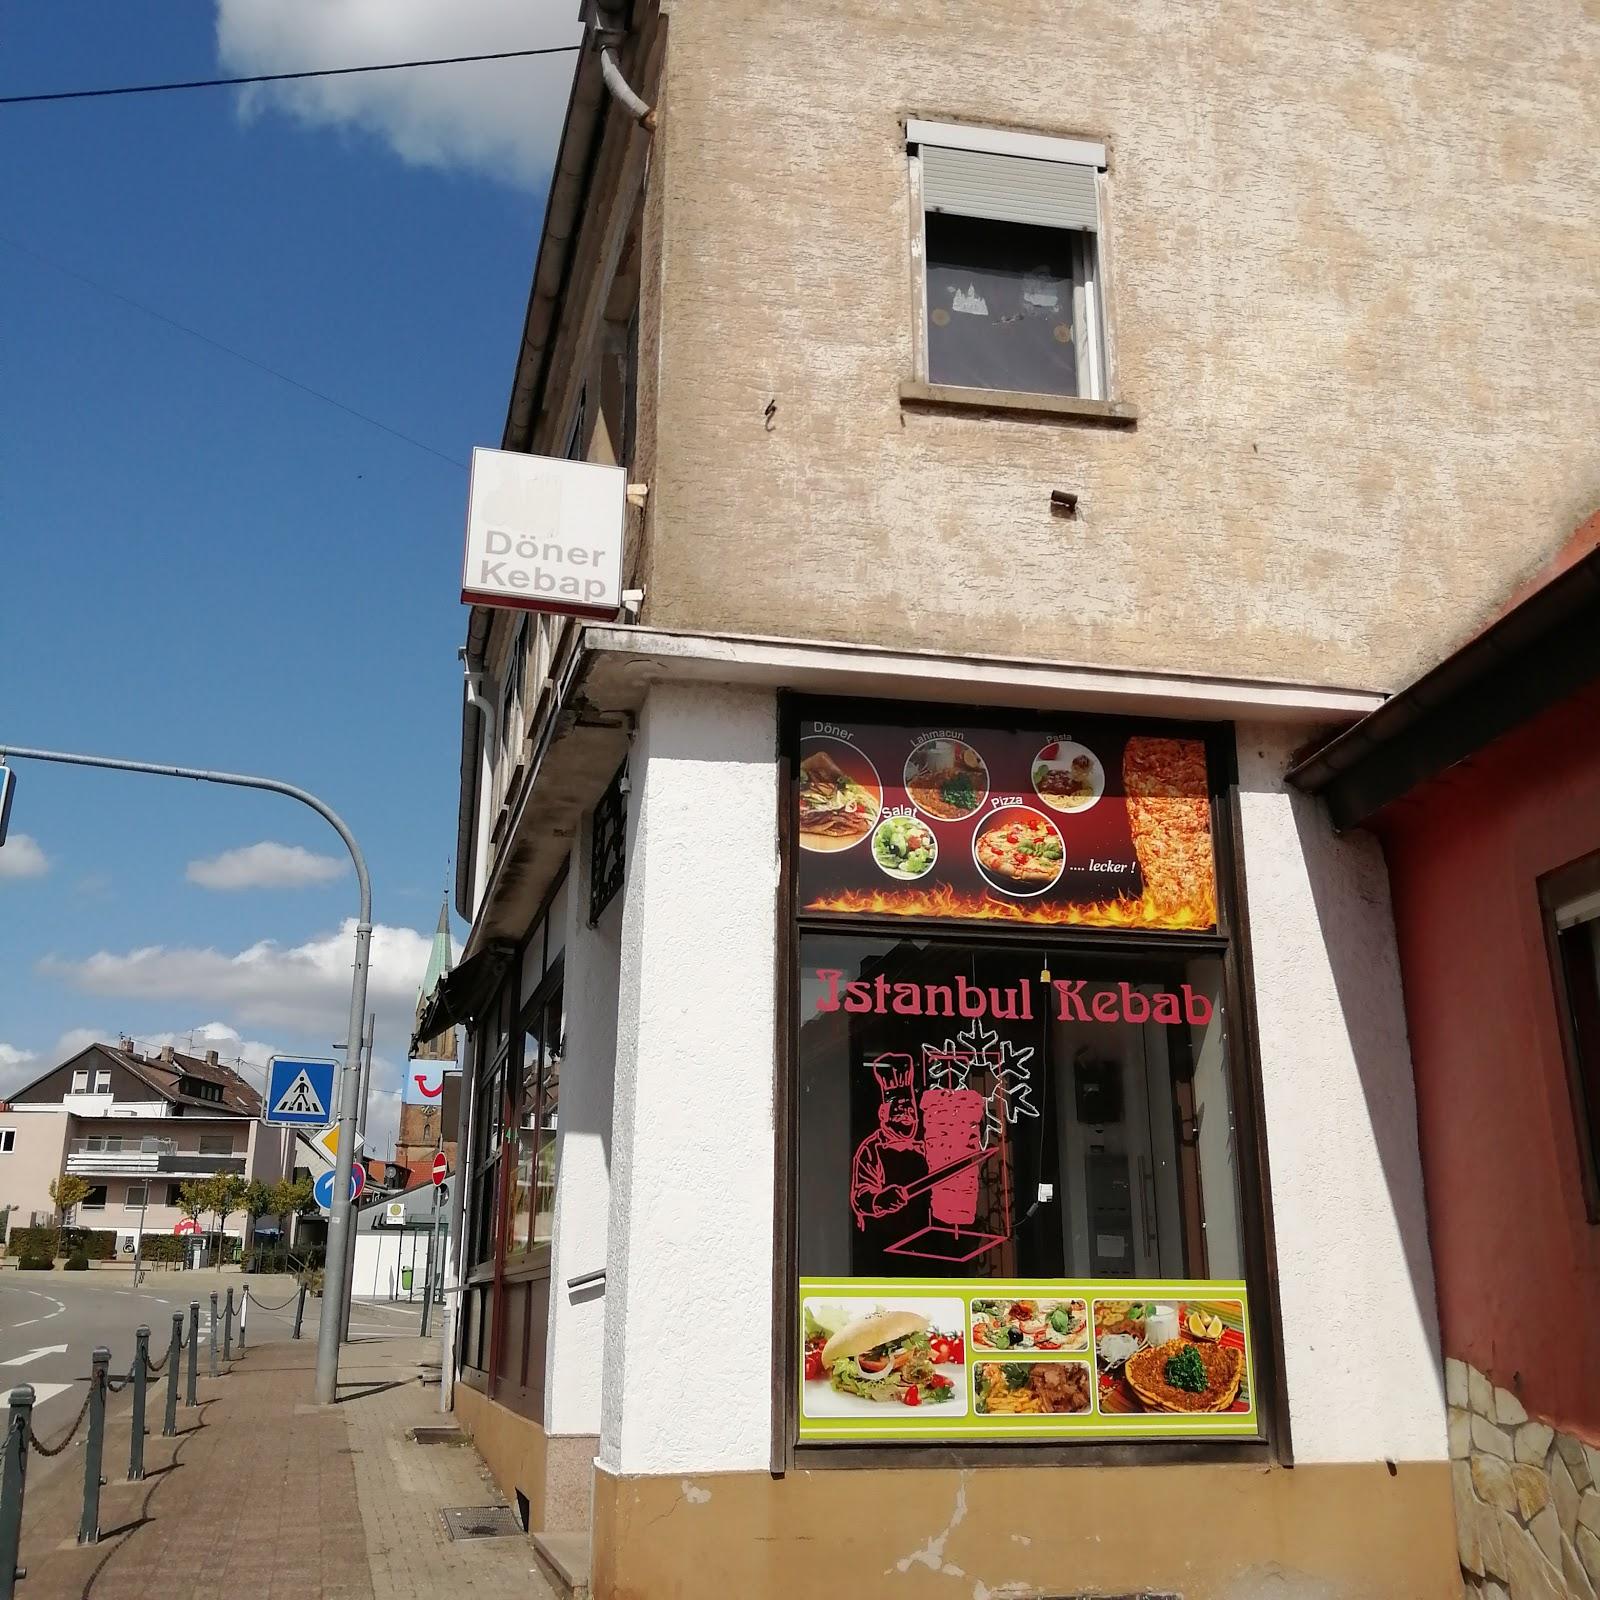 Restaurant "Istanbul Kebab" in Schiffweiler